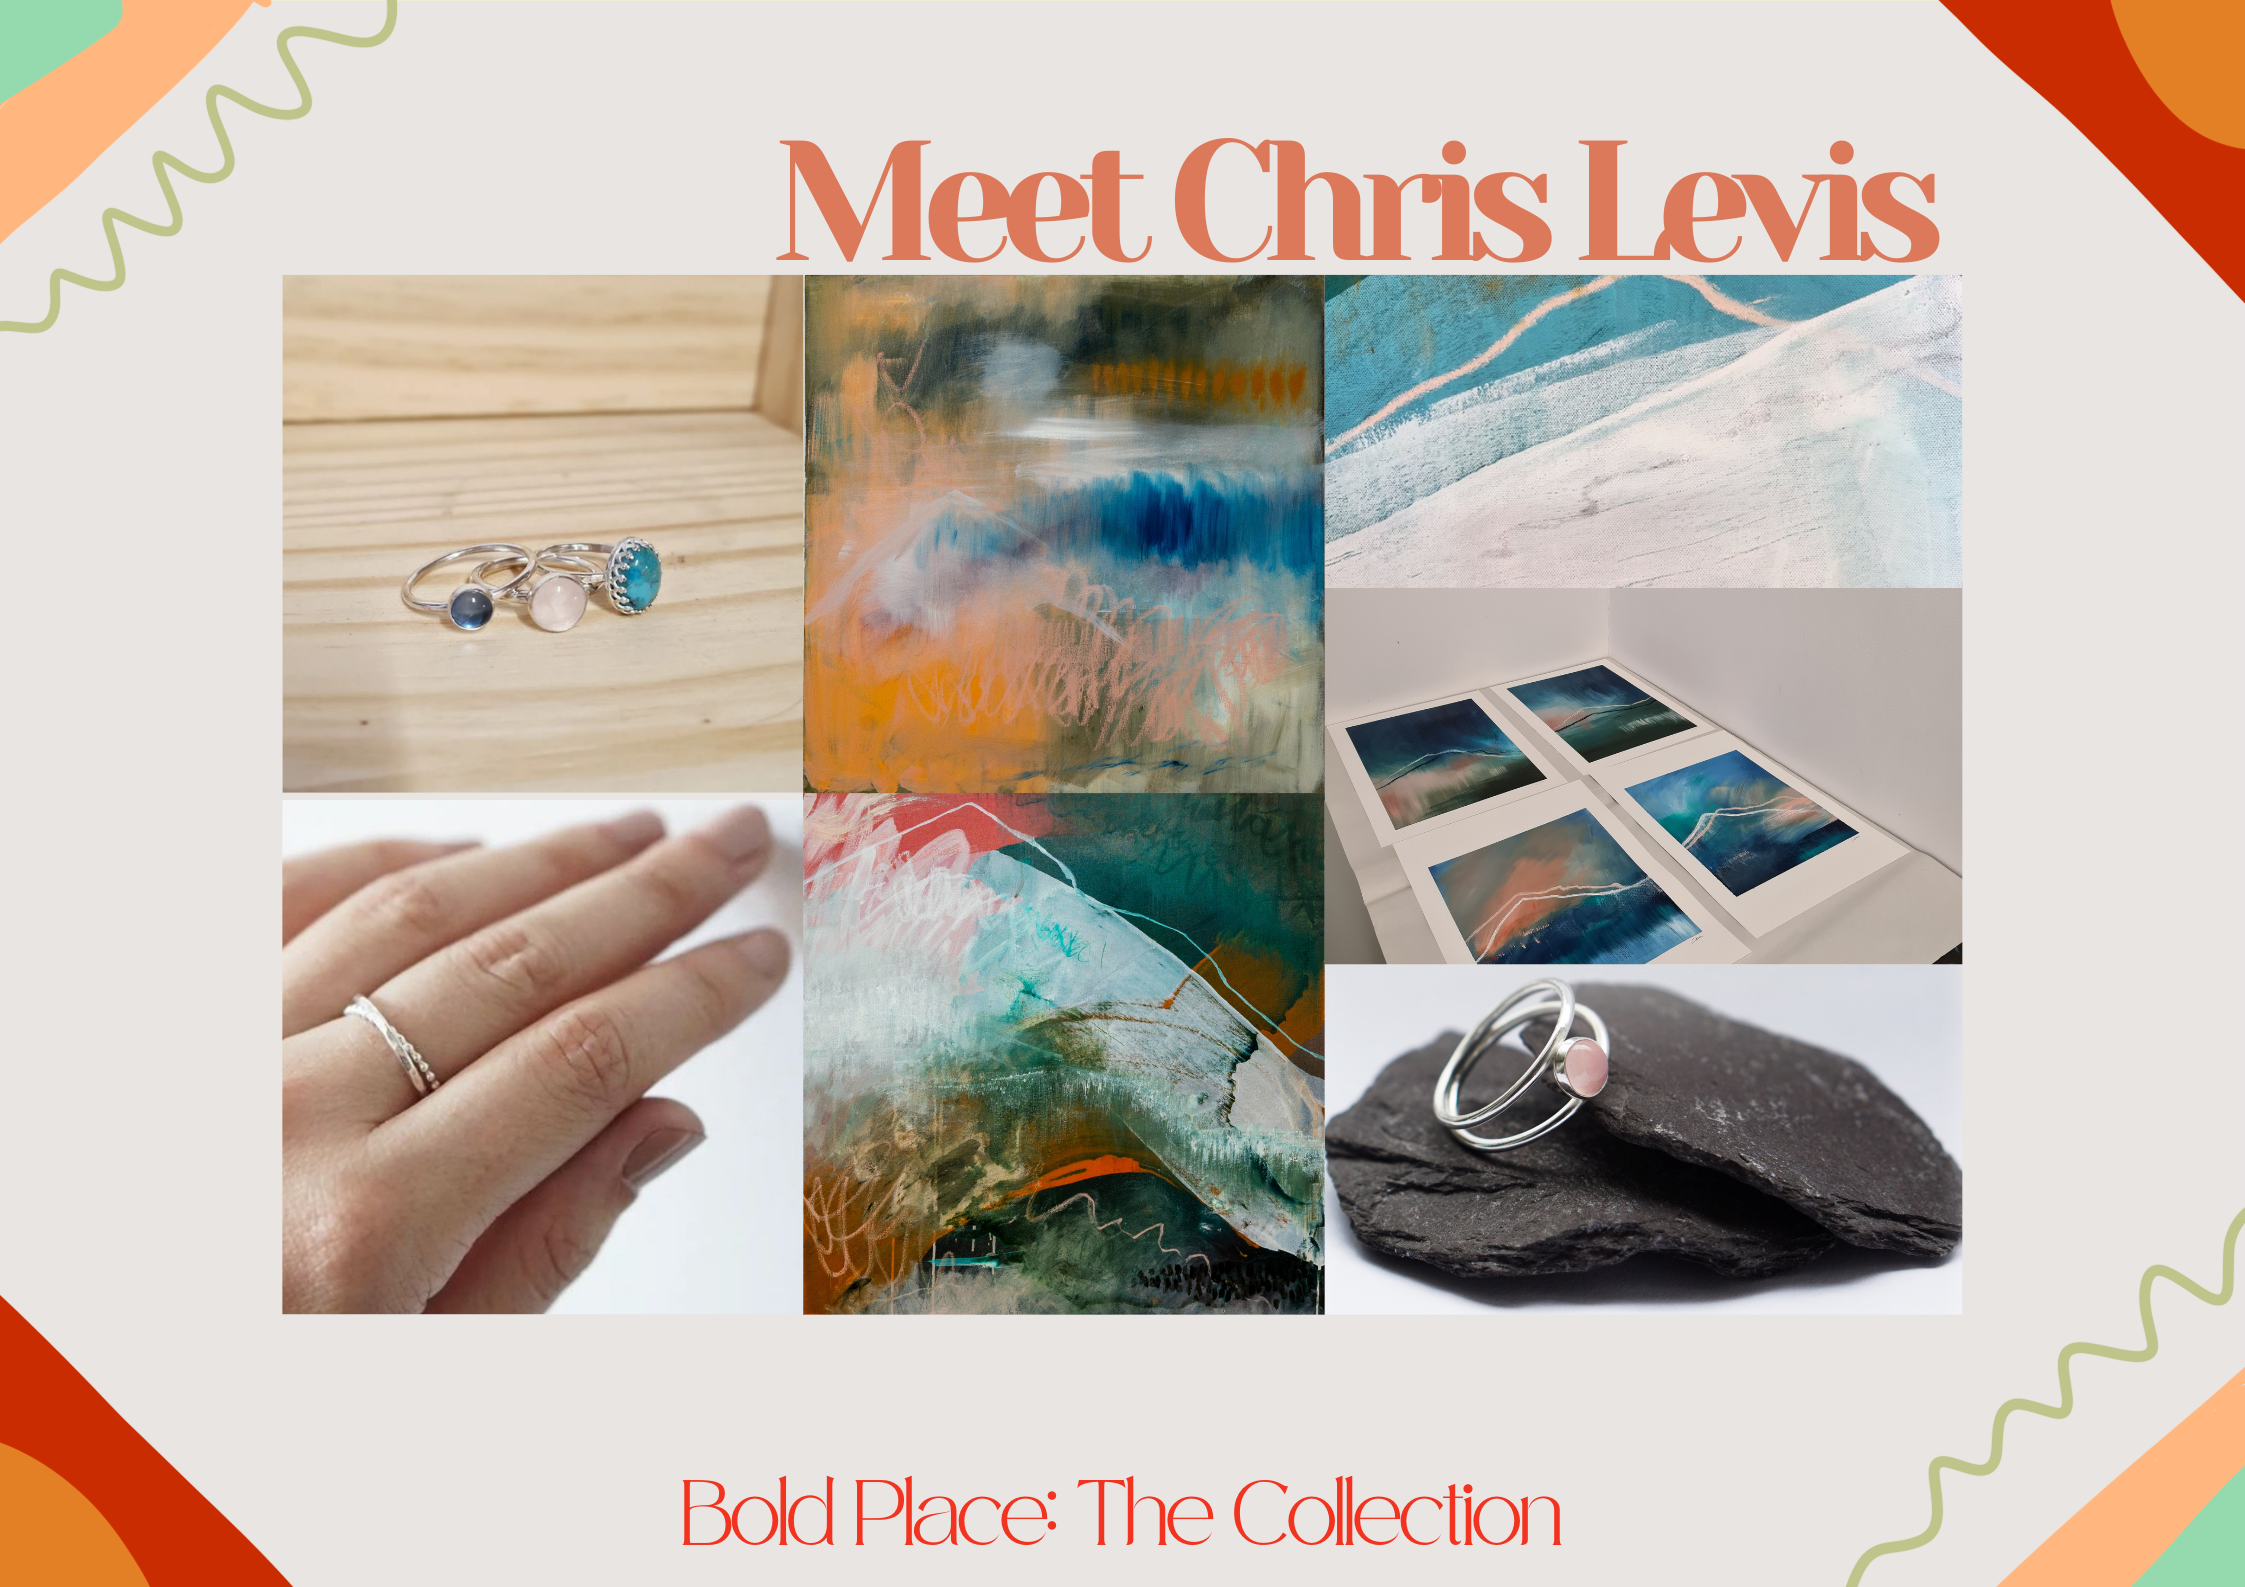 Bold Place: Meet Chris Levis